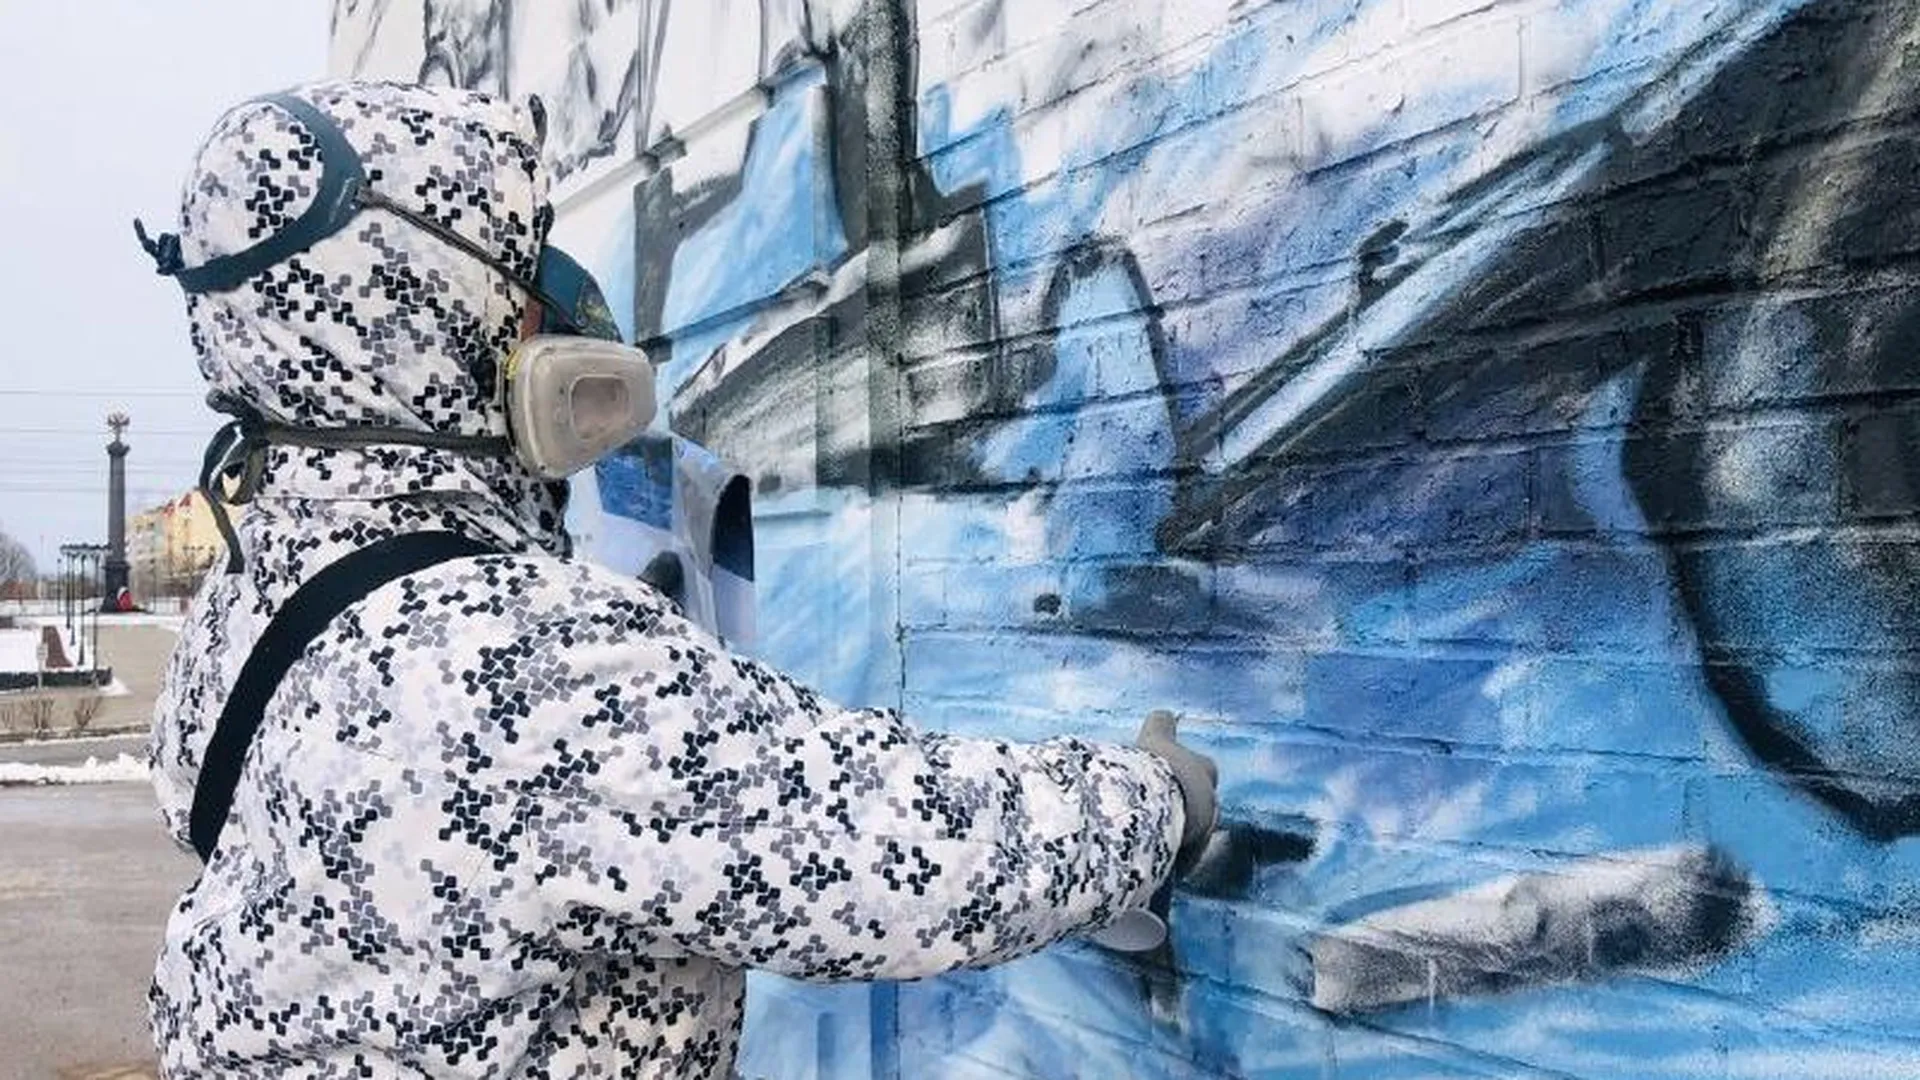 Граффити-художник из Можайска украсит стену дома яркой гигантской картиной на тему ВОВ